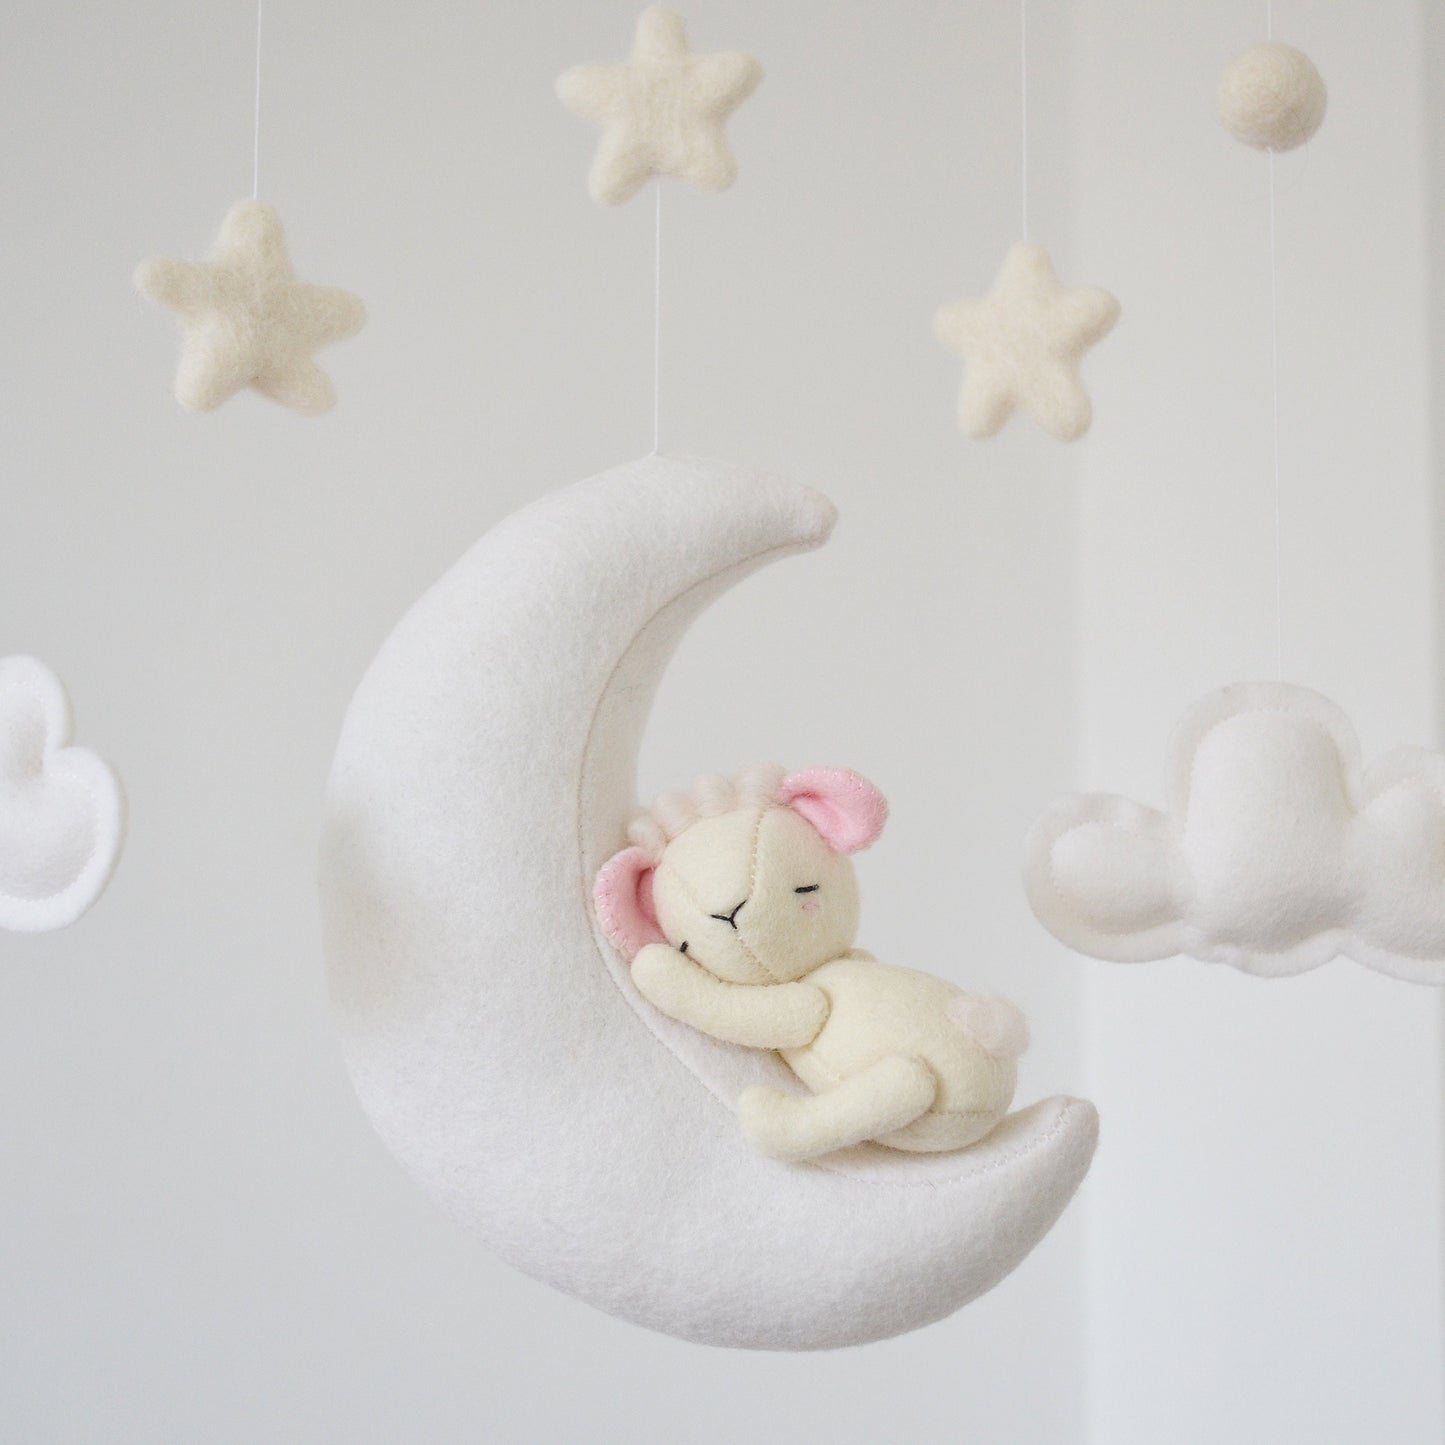 Baby Lamb sleeping on the Moon